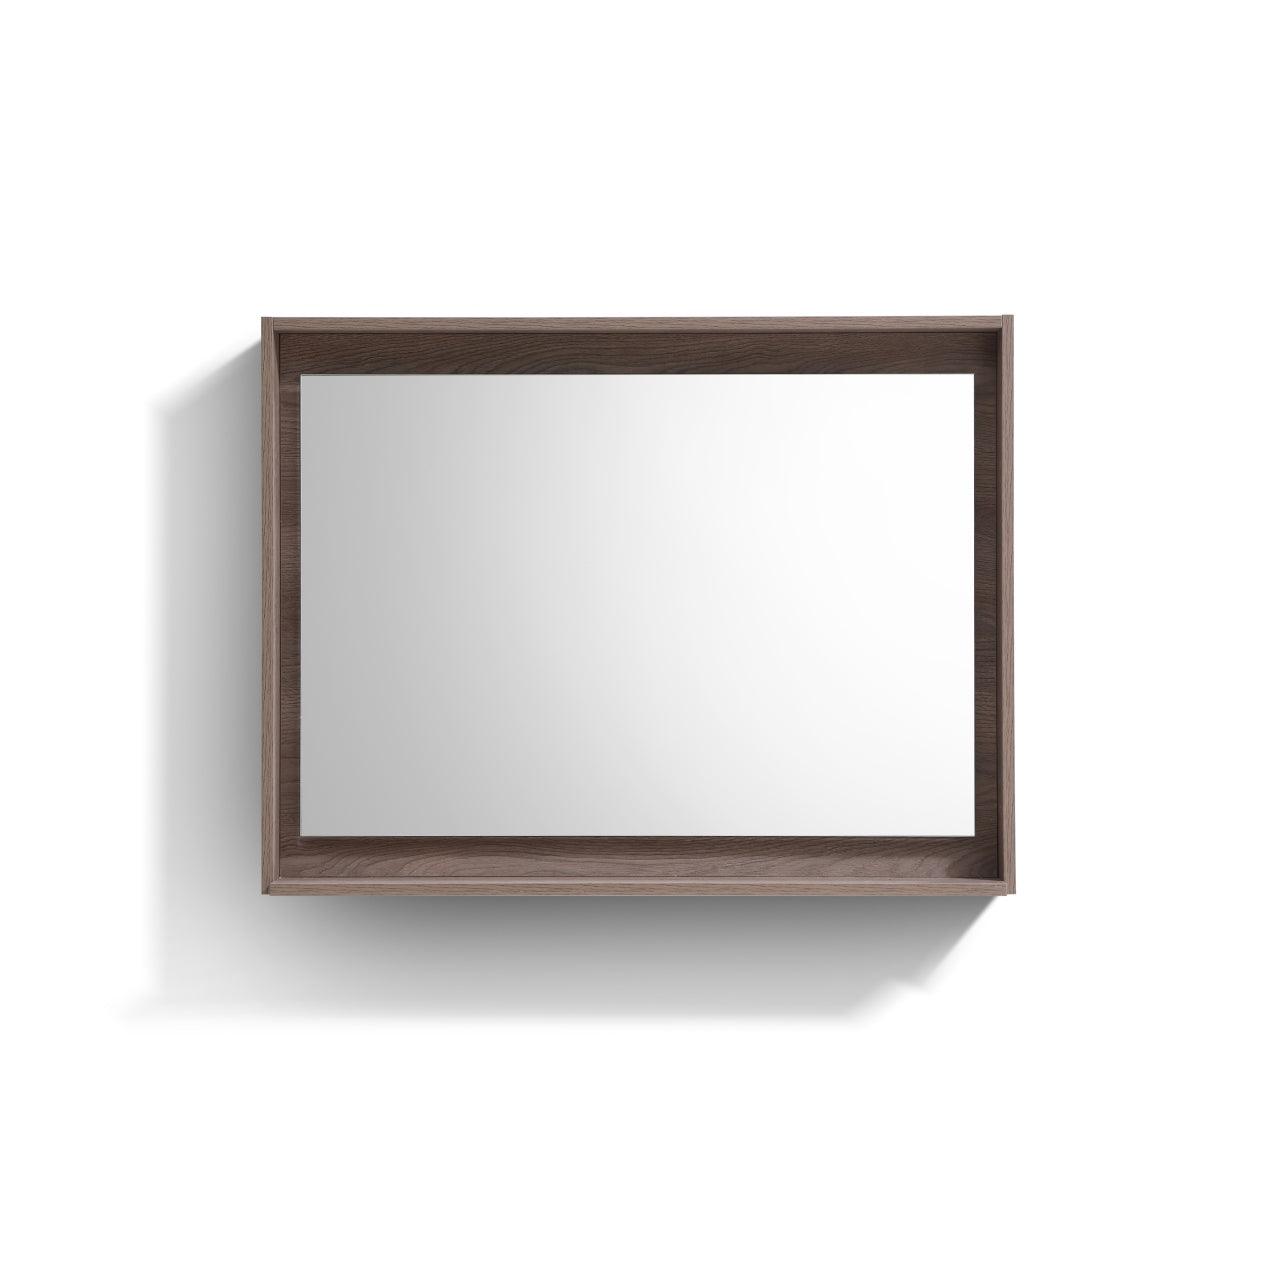 Bosco 40" Framed Mirror With Shelve - Hbdepot